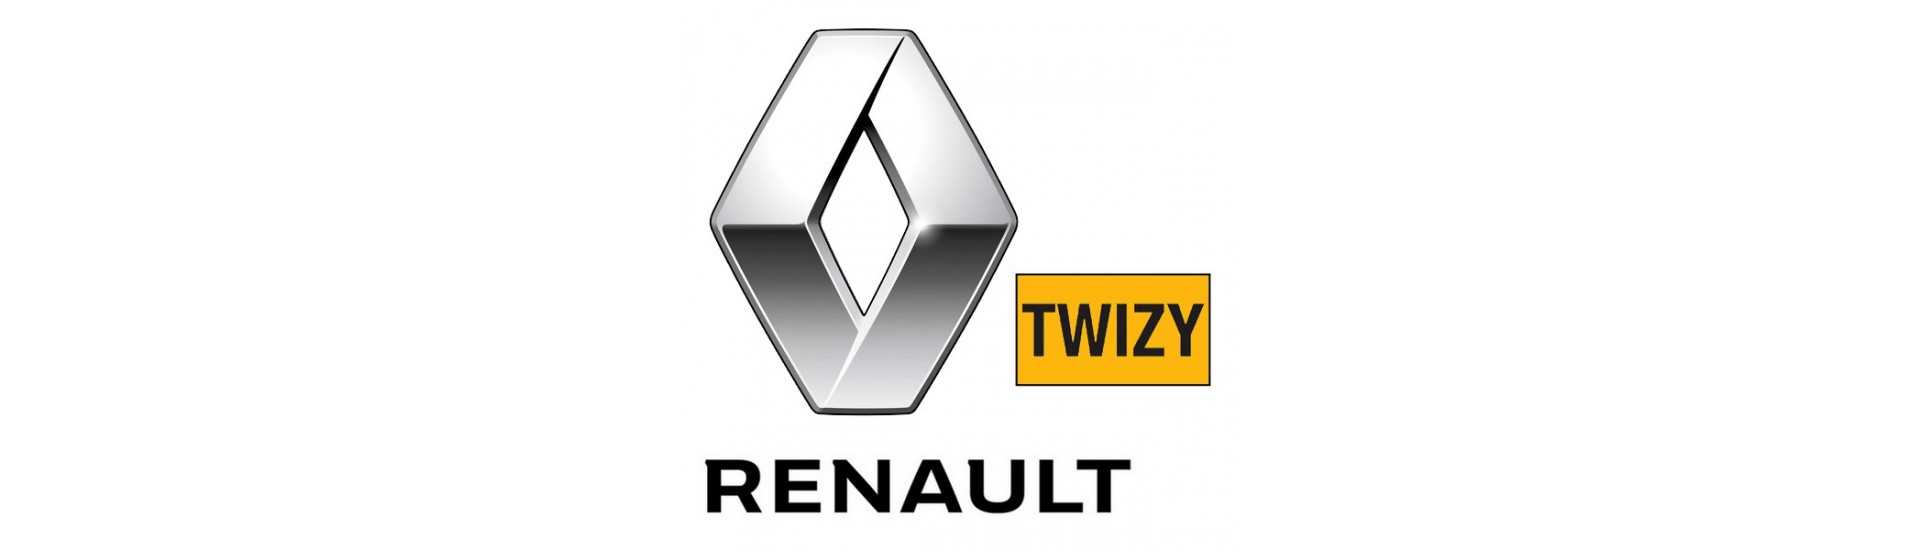 Carrosserie zum besten Preis für Auto ohne Lizenz Renault Twizy